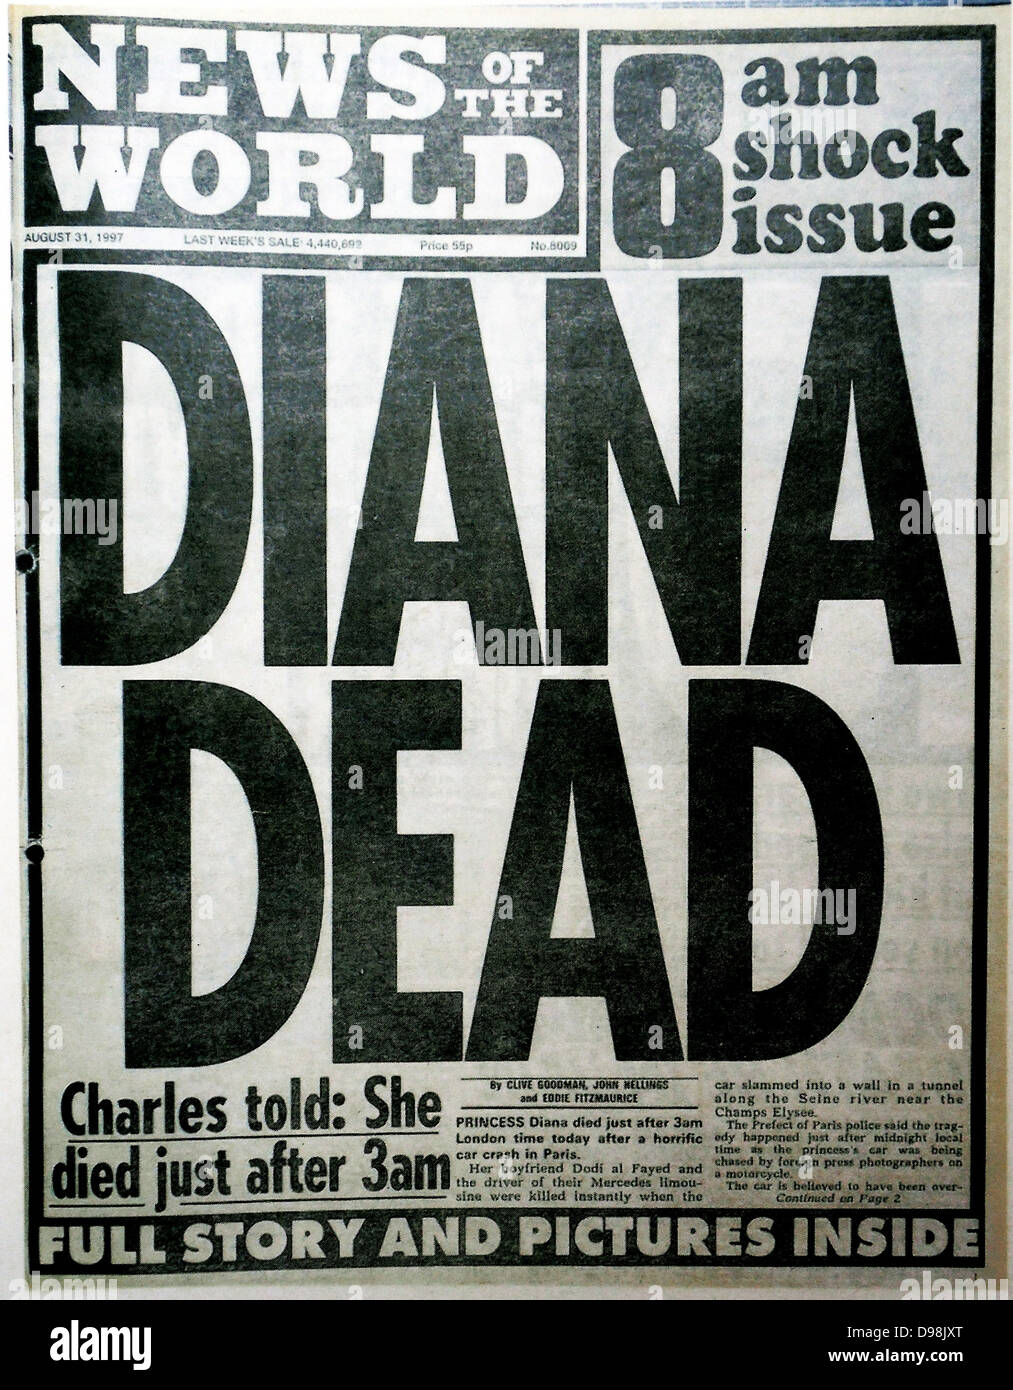 El 'News of the World, periódico, 10 de julio de 2011. Conmemorativa de la última edición del periódico lleva una reimpresión del problema marcando la muerte de la Princesa Diana (ex esposa del Príncipe Carlos de Gran Bretaña), en agosto de 19997- Foto de stock